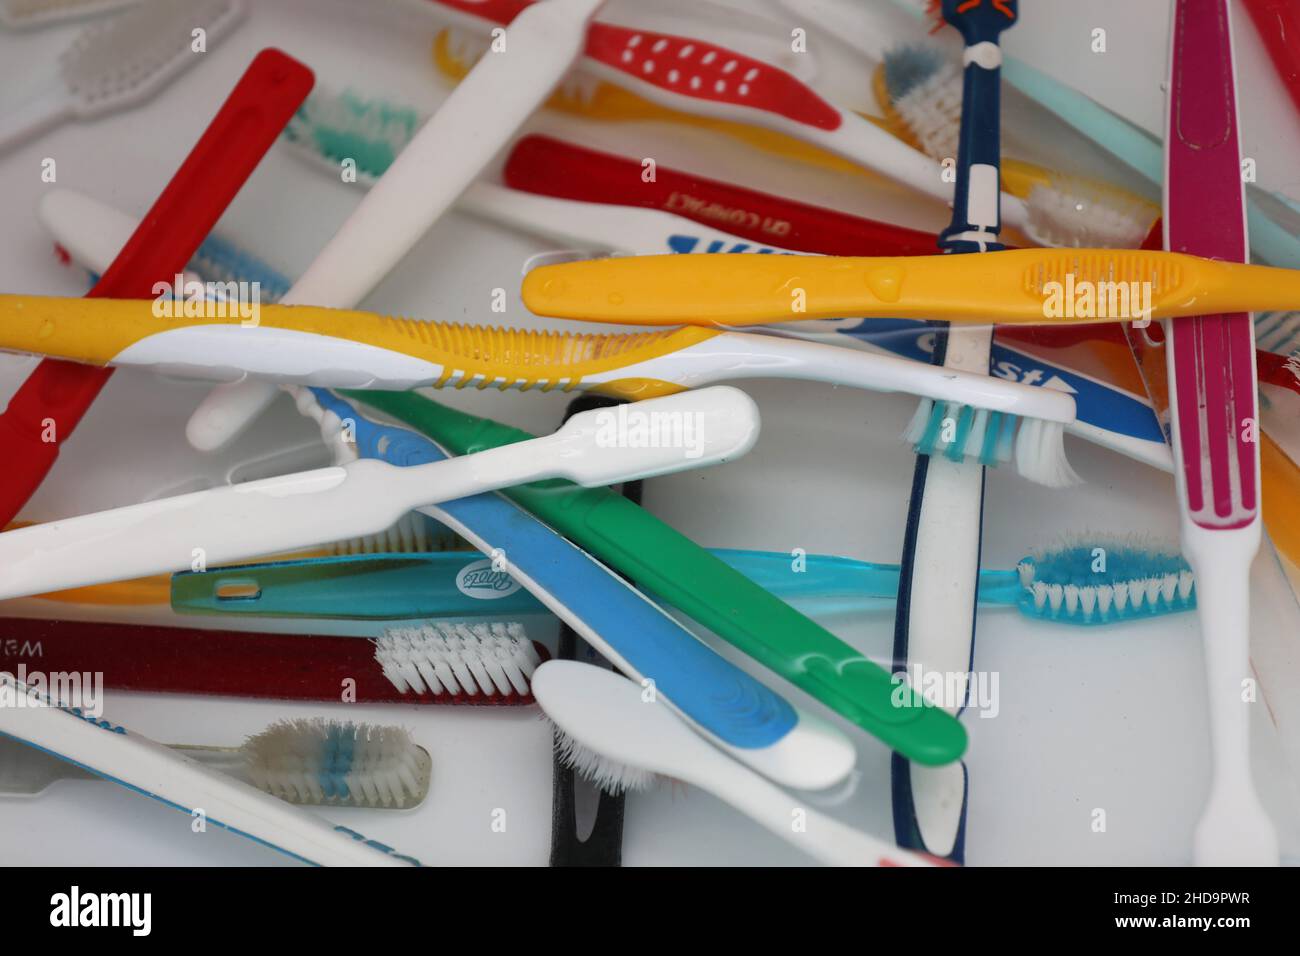 Eine Auswahl an bunten Zahnbürsten aus Kunststoff in einem Topf in einem Badezimmer in Chichester, West Sussex, Großbritannien. Stockfoto